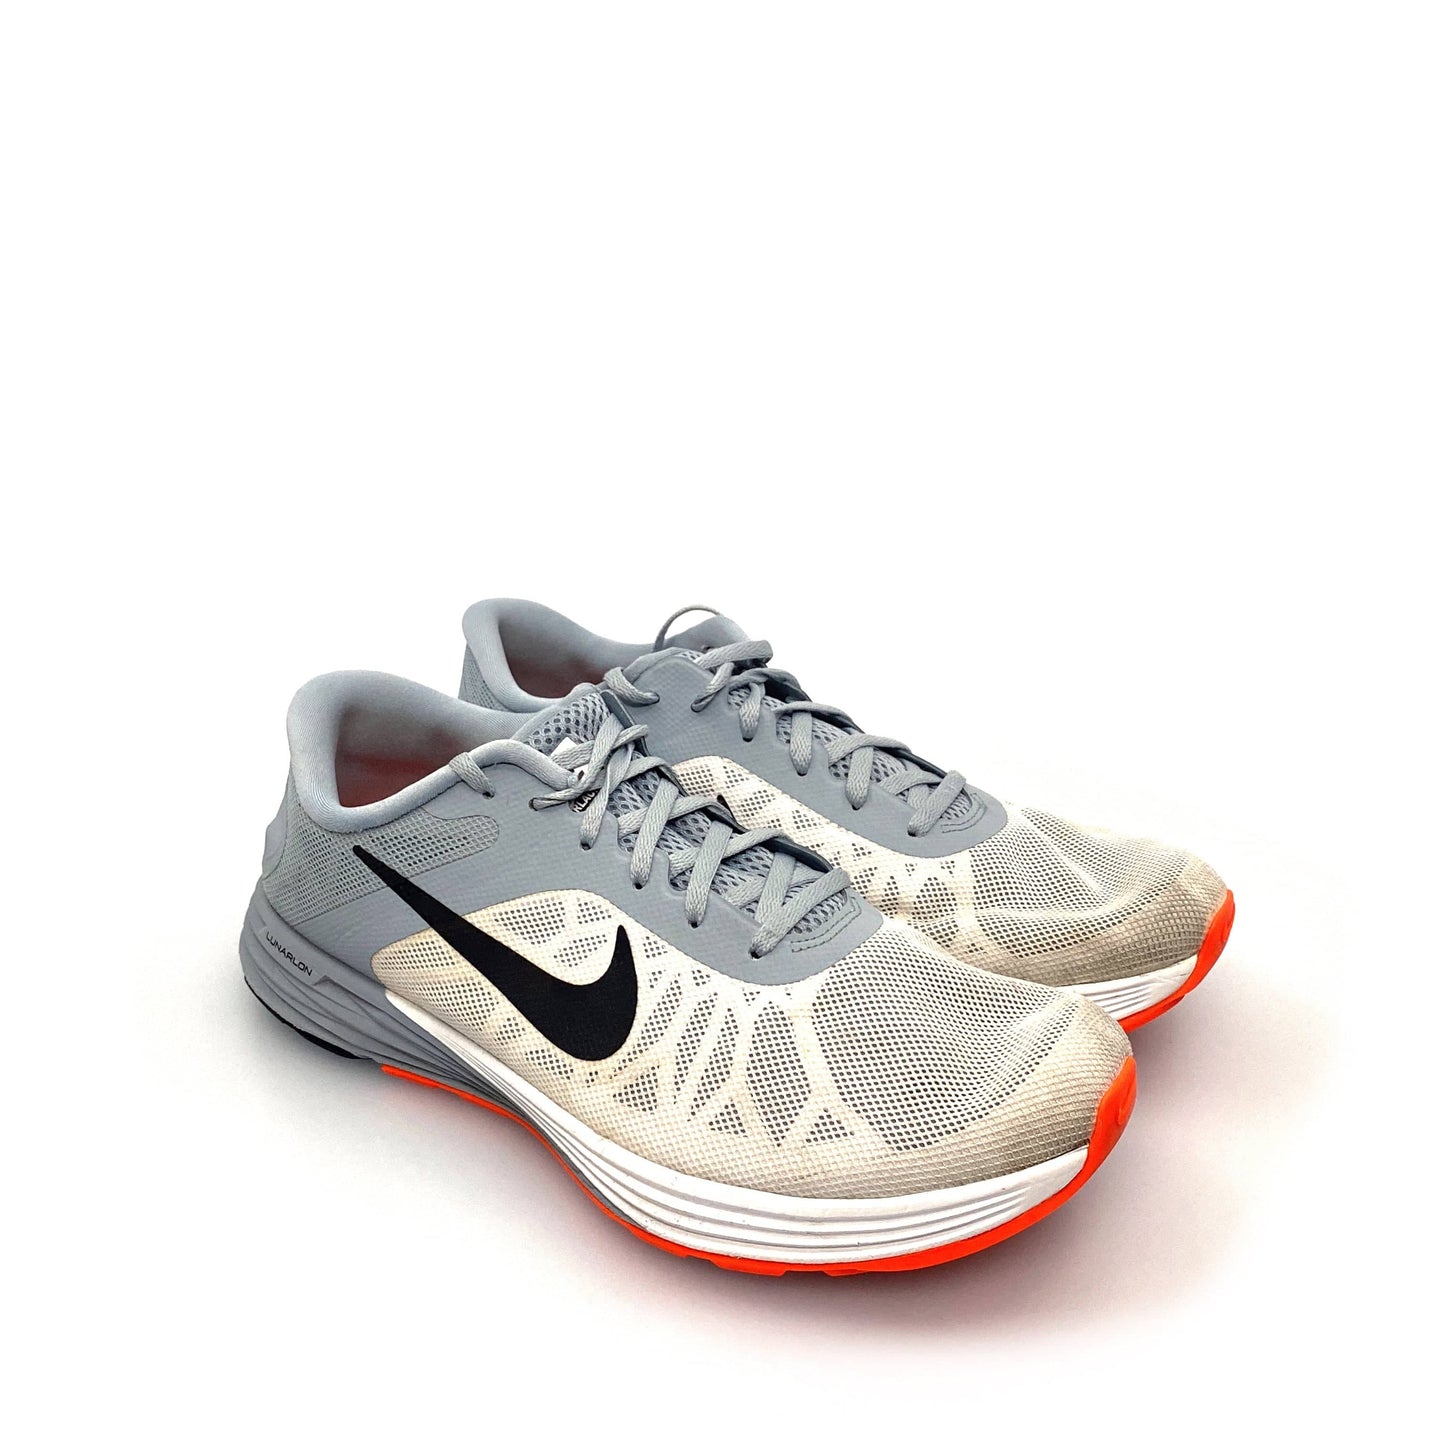 Nike Lunarlon Lunar Launch Womens Size 11 Gray Running Shoes 654916-101